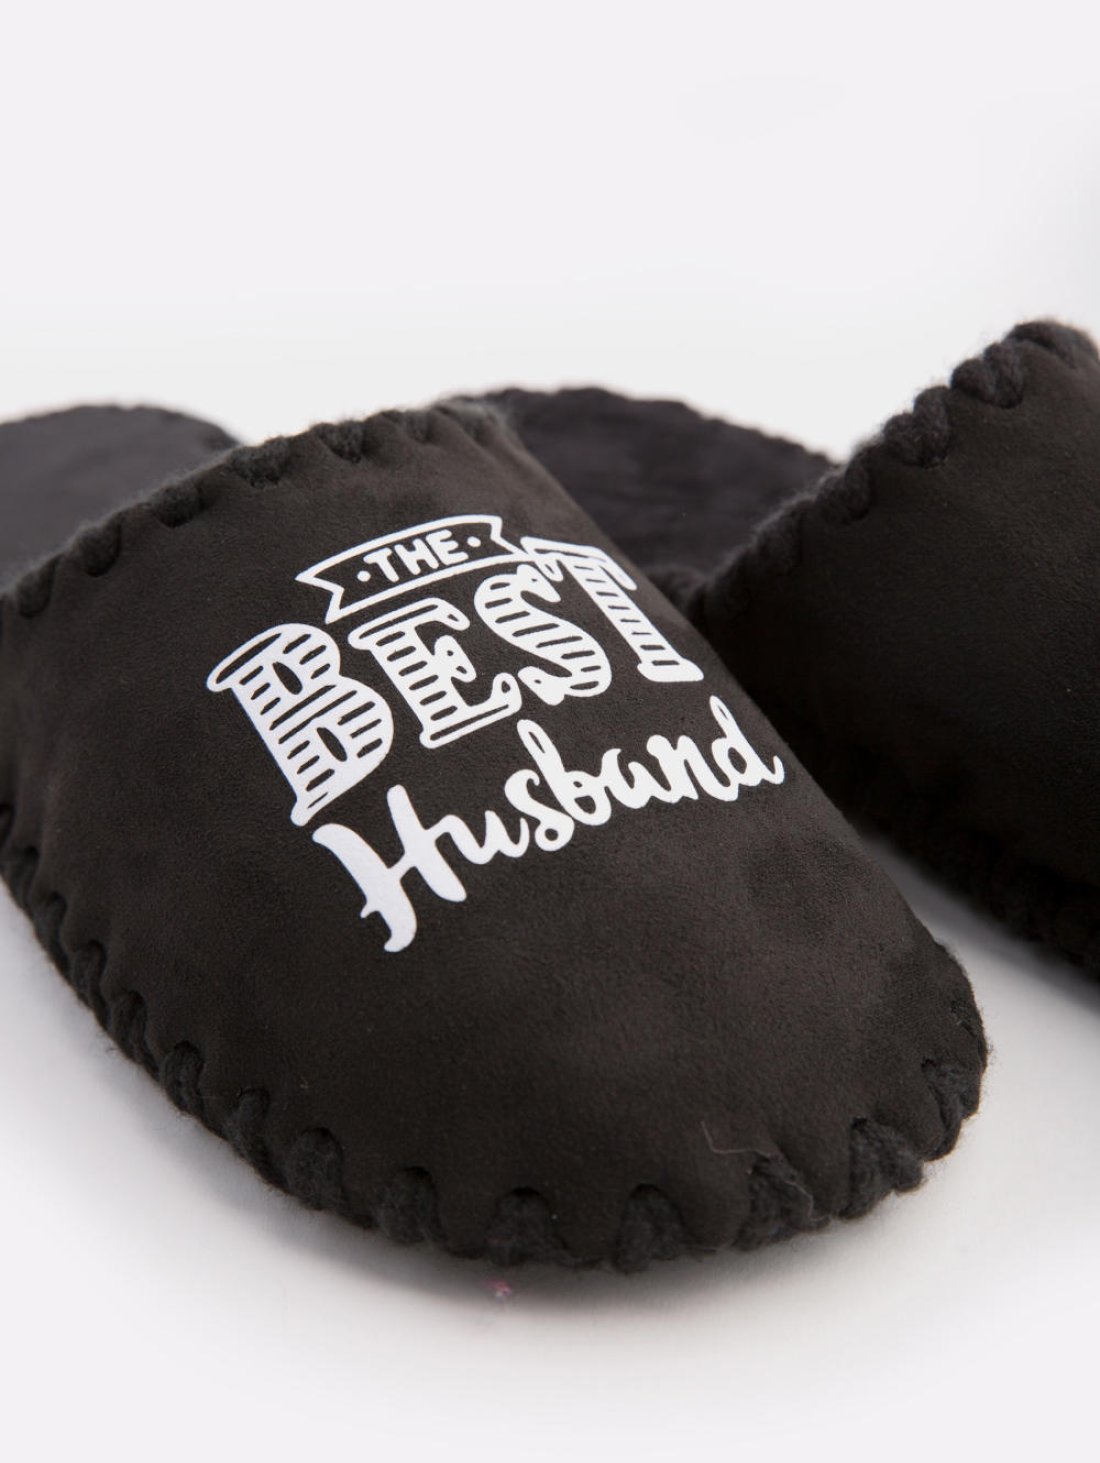 Закрытые мужские тапочки для дома Family Story. Черного цвета с надписью Best Husband Фото - 3